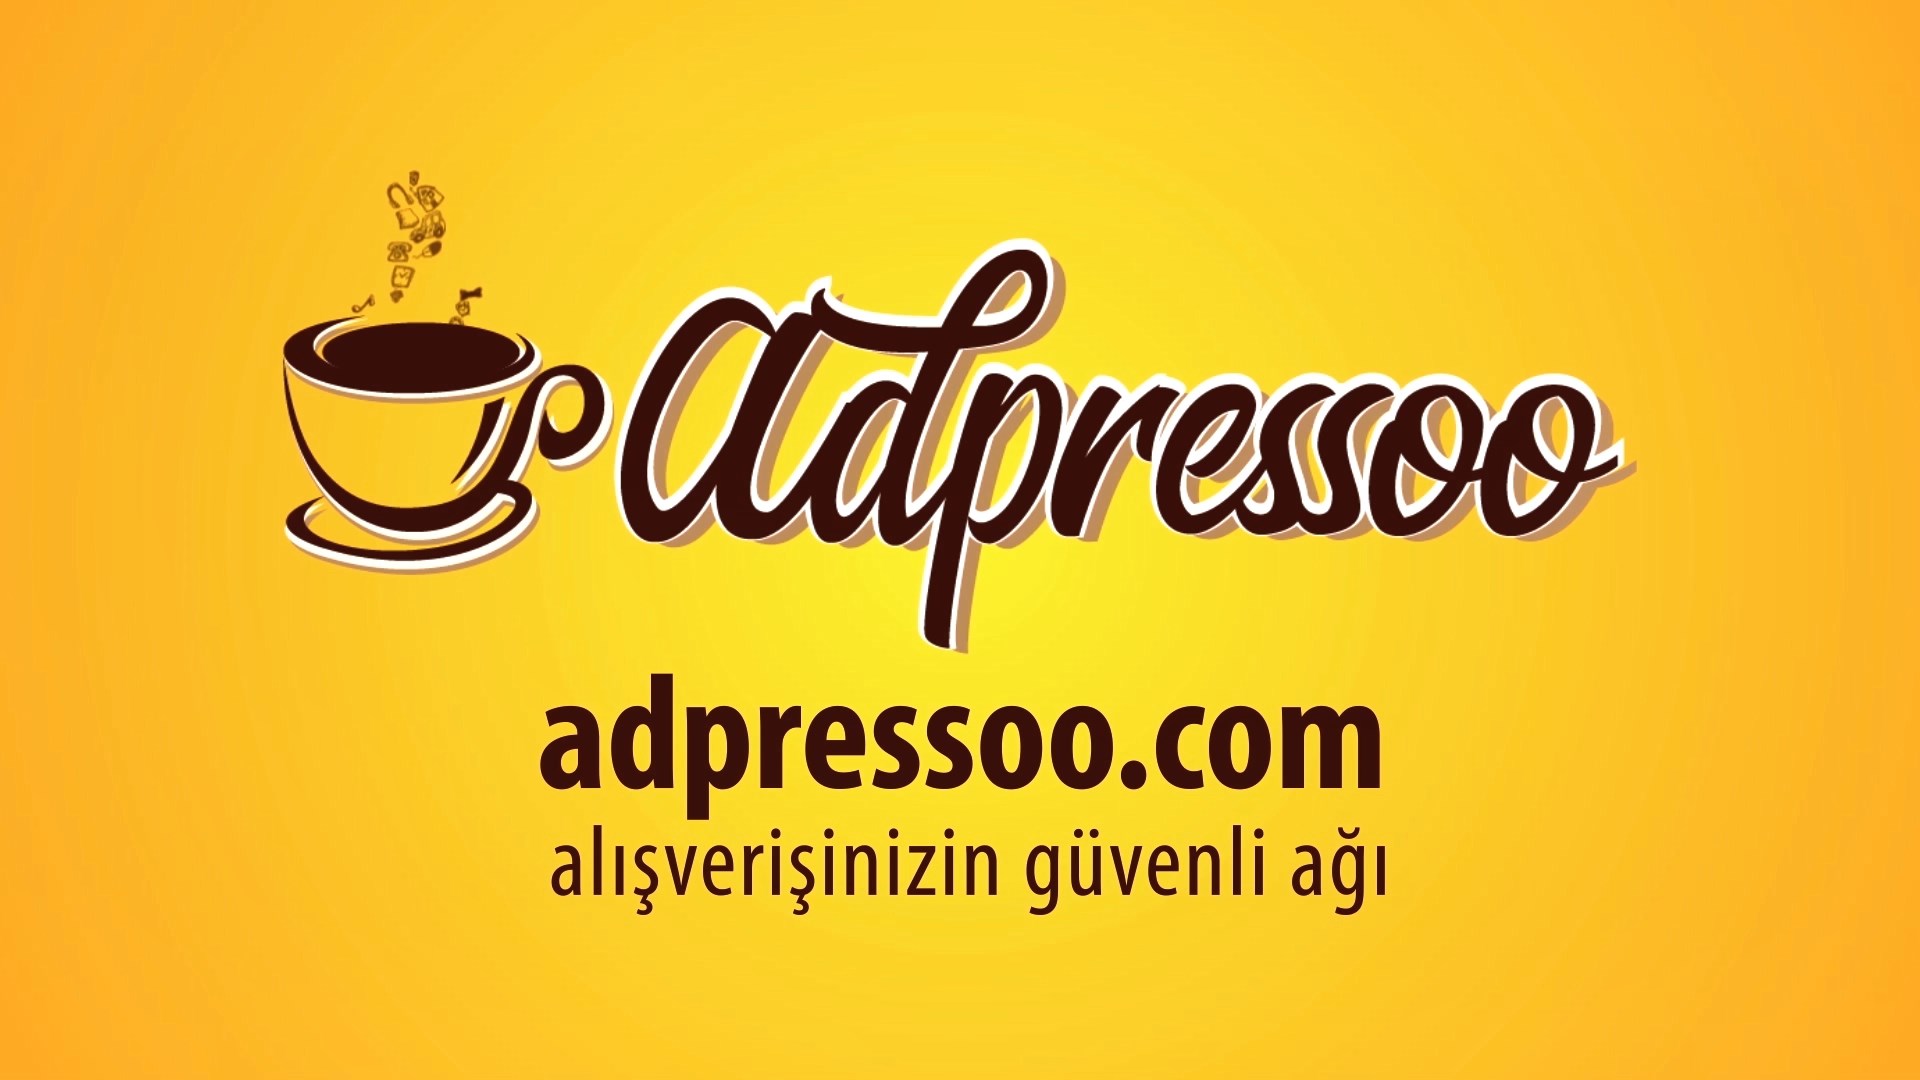 aspressoo.com 9 - Reklam Filmi